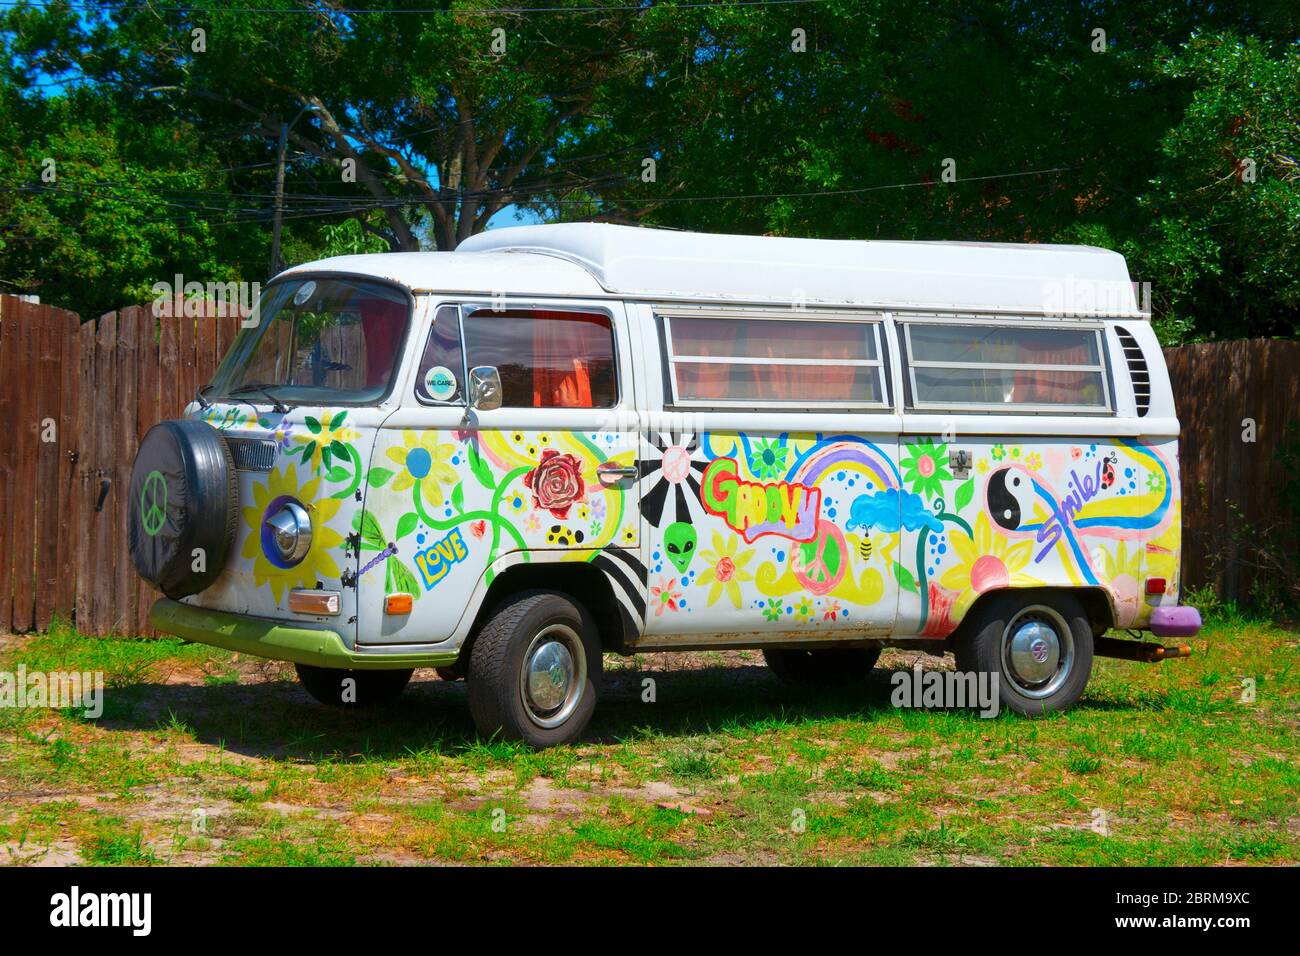 Sankt Petersburg, Florida / USA - 3. Mai 2020: Antiker Hippie 1970 Volkswagen VW Typ 2 Wohnmobil mit Liebe und groovigen bunten Kunstwerken handbemalt Stockfoto